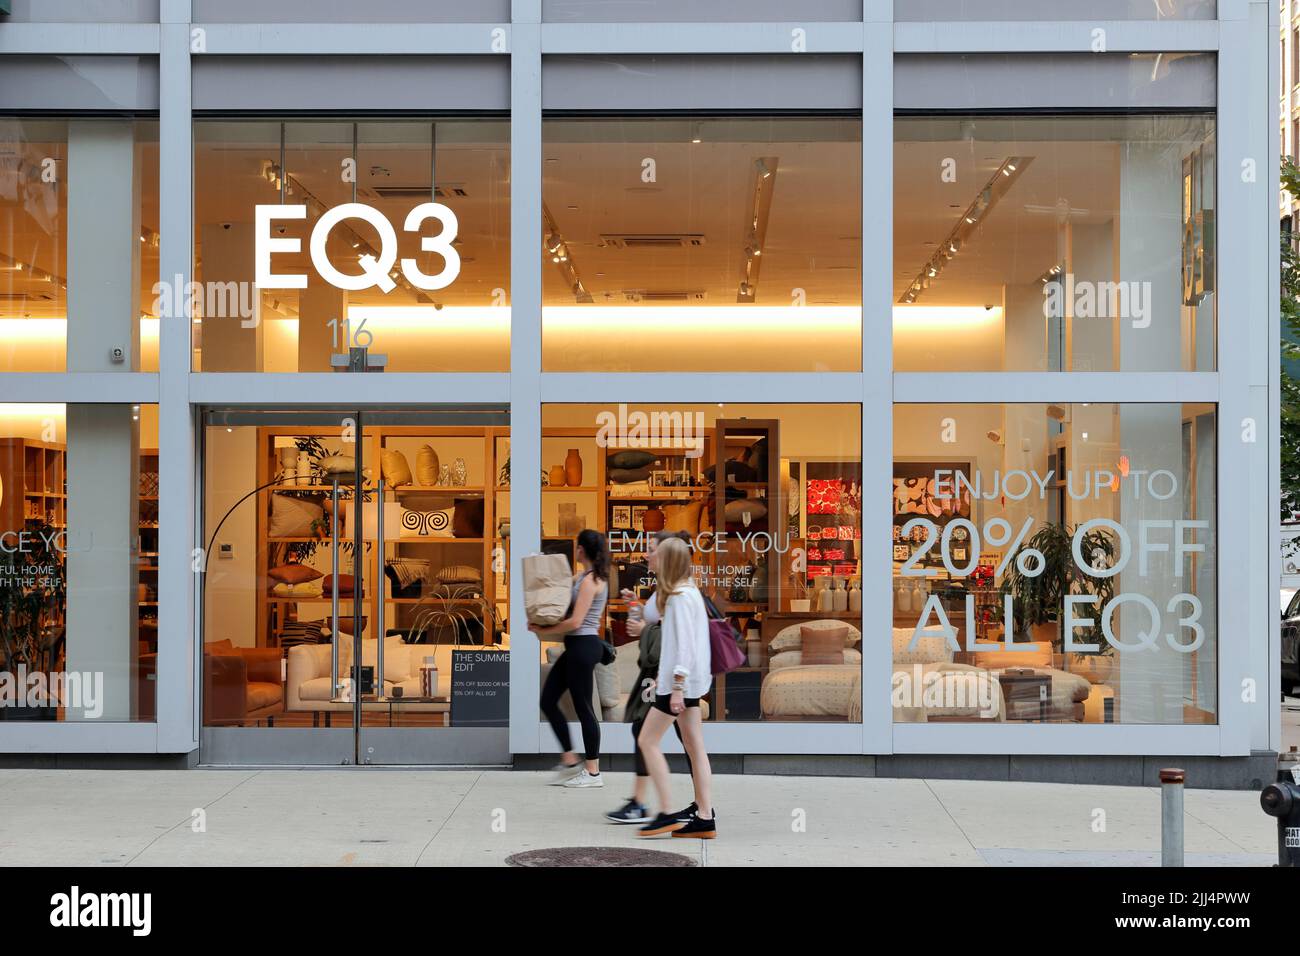 EQ3, 116 7th Ave, New York, NYC vitrine photo d'un magasin de biens et de meubles de maison dans le quartier de Chelsea à Manhattan. Banque D'Images